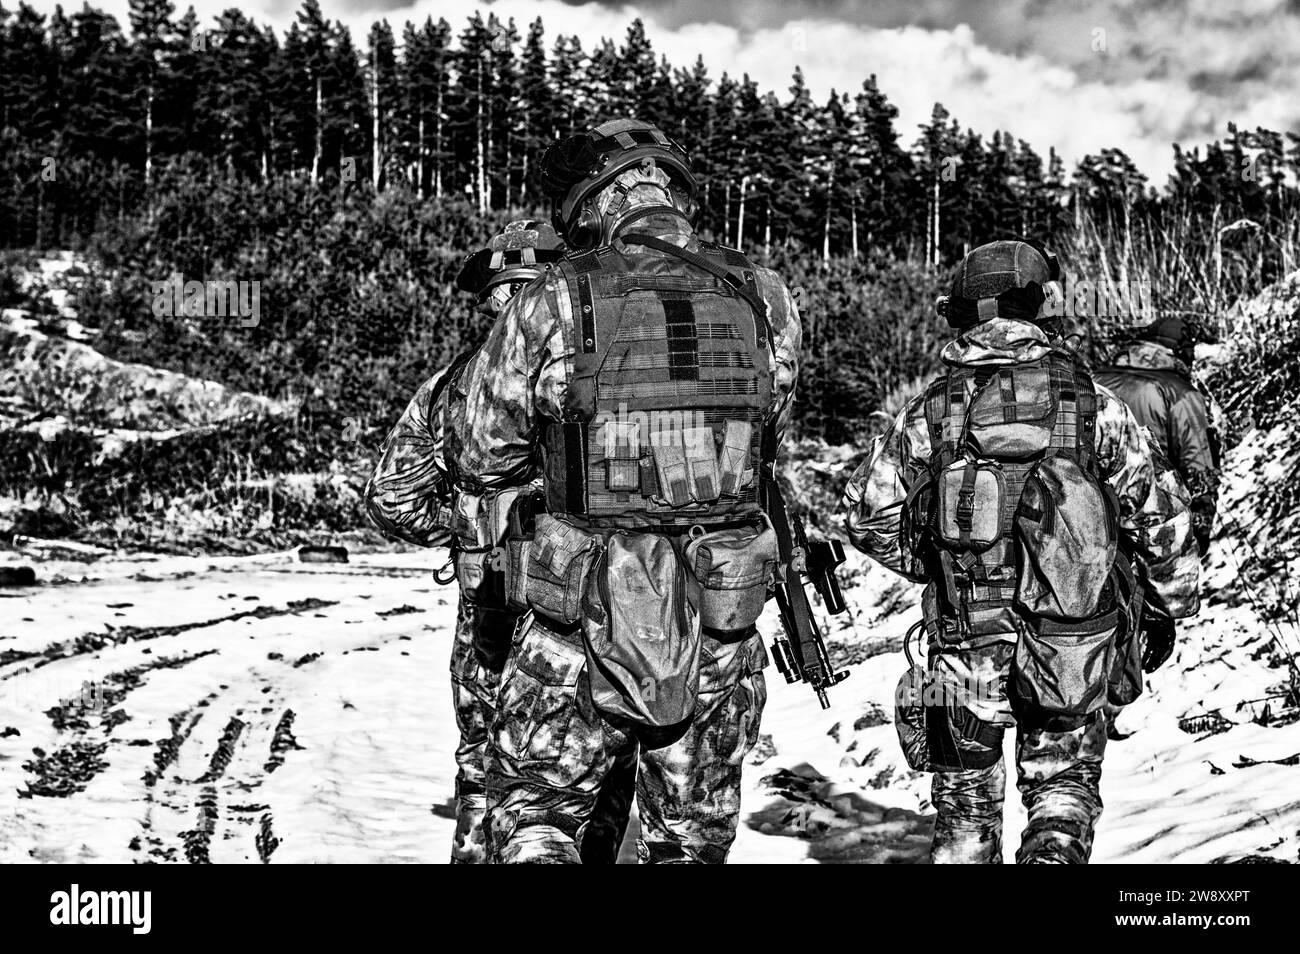 Zwei Soldaten einer Spezialeinheit bereiten sich auf eine gefährliche Mission vor. Gemischte Medien Stockfoto